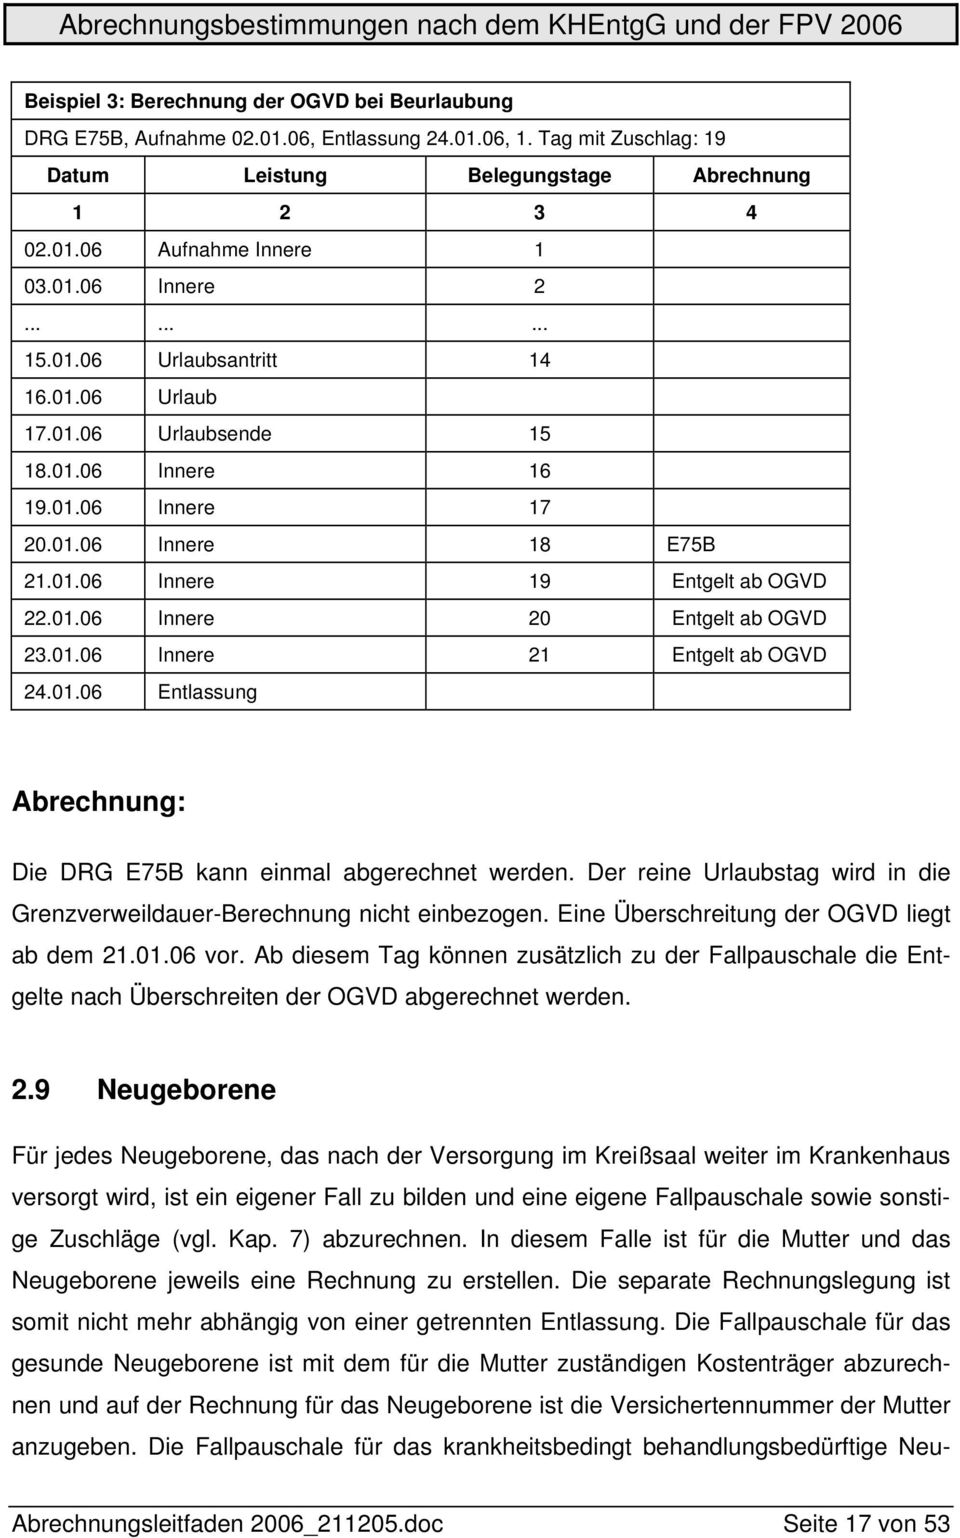 01.06 Innere 21 Entgelt ab OGVD 24.01.06 Entlassung Abrechnung: Die DRG E75B kann einmal abgerechnet werden. Der reine Urlaubstag wird in die Grenzverweildauer-Berechnung nicht einbezogen.